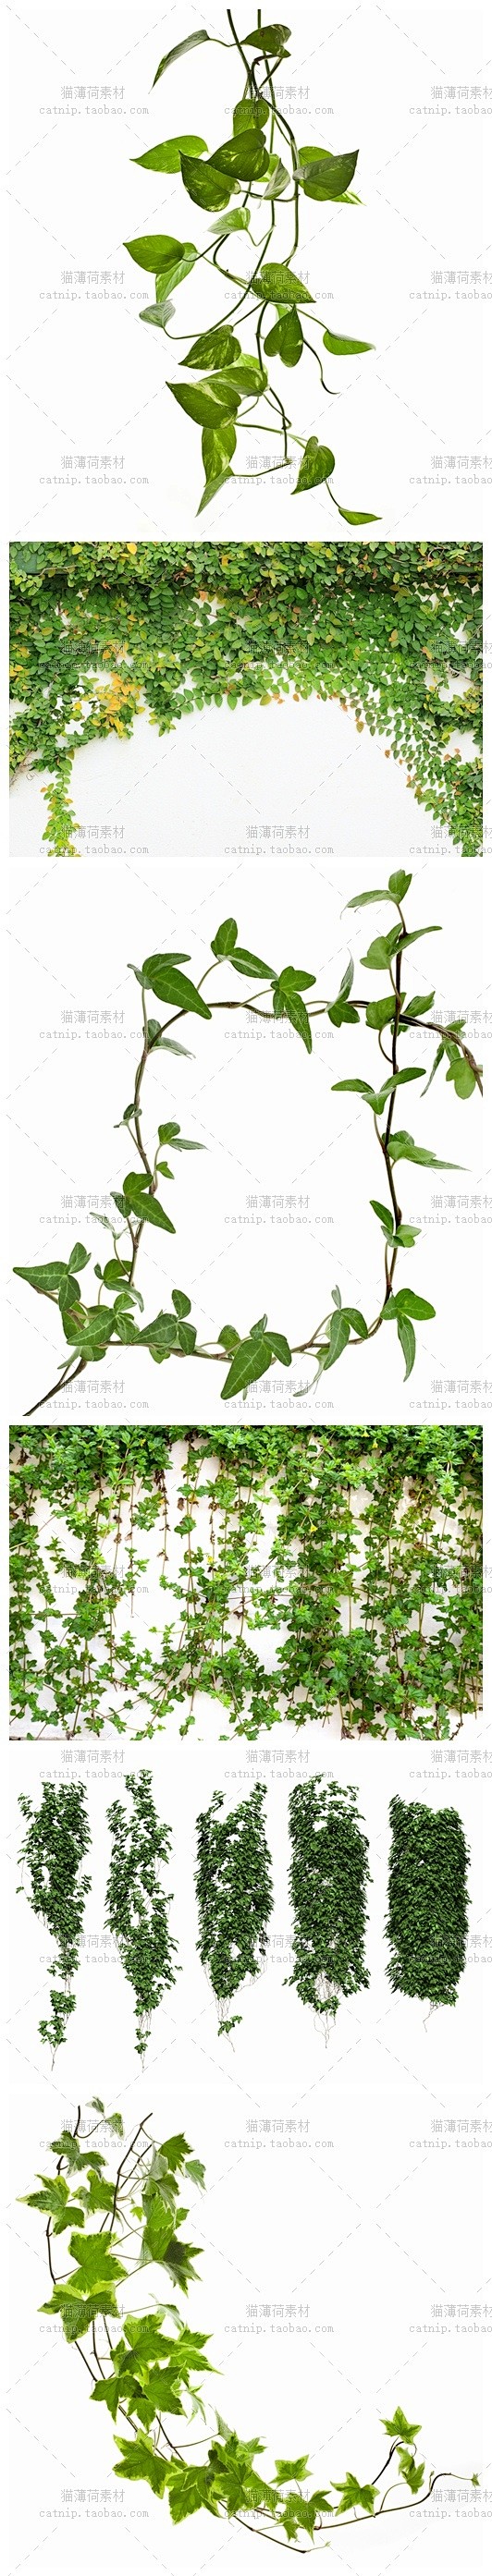 [gq68]25张常春藤绿色藤蔓植物植被...